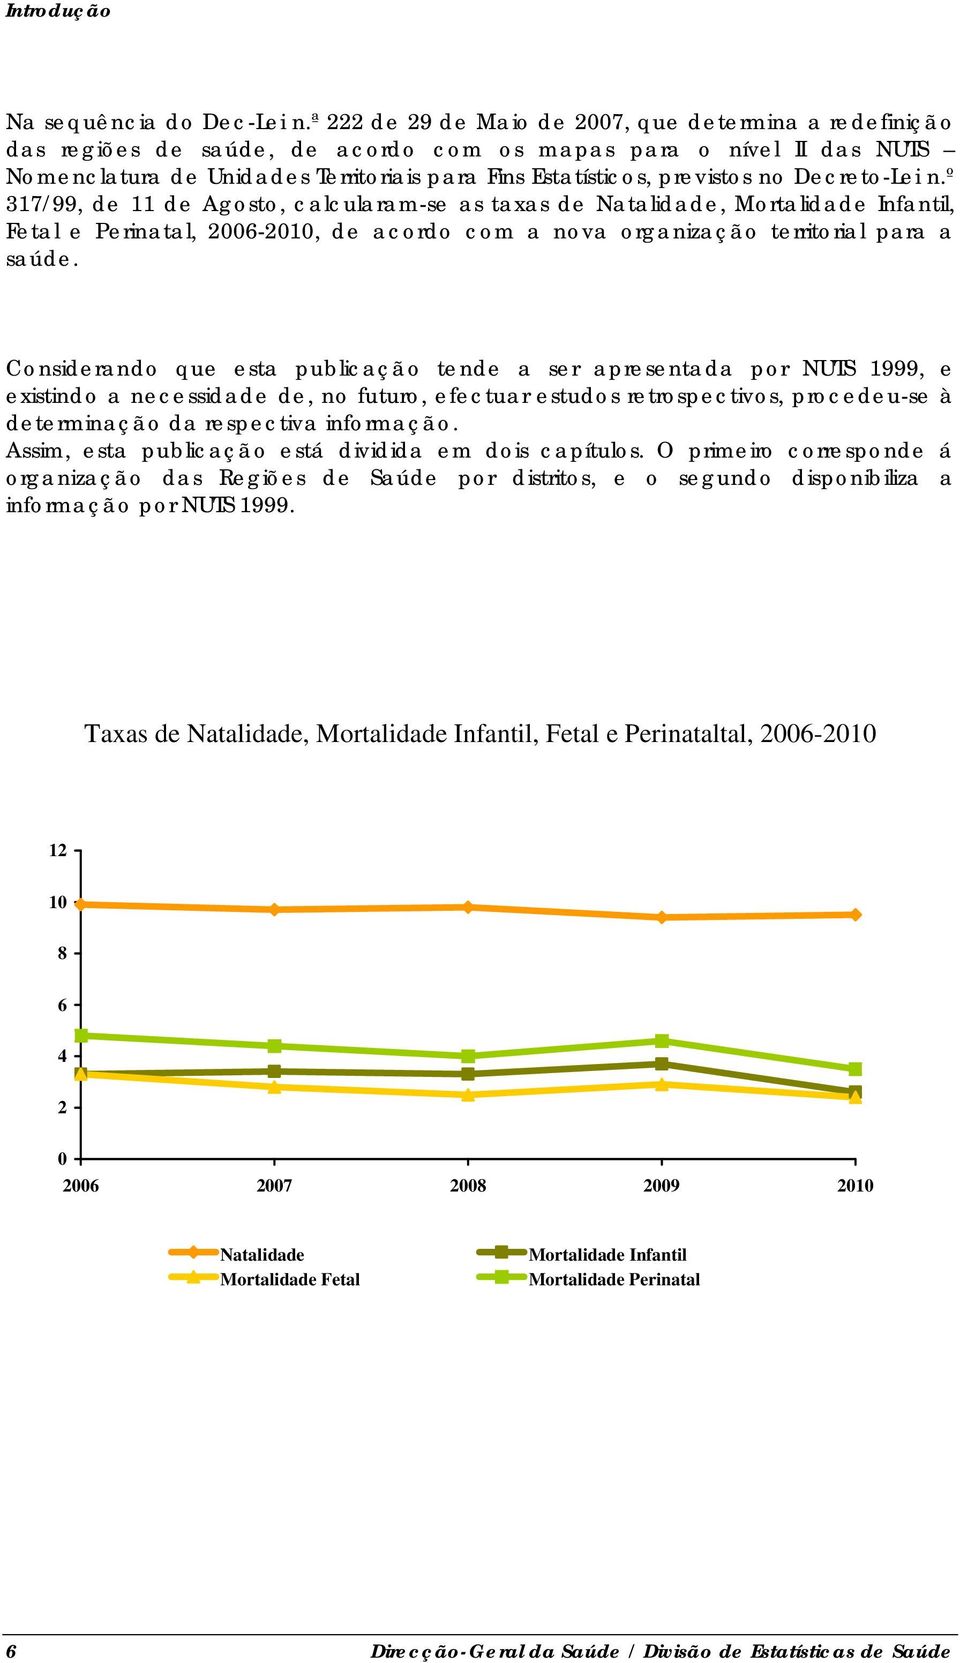 no Decreto-Lei n.º 317/99, de 11 de Agosto, calcularam-se as taxas de Natalidade, Mortalidade Infantil, Fetal e Perinatal, 2006-2010, de acordo com a nova organização territorial para a saúde.